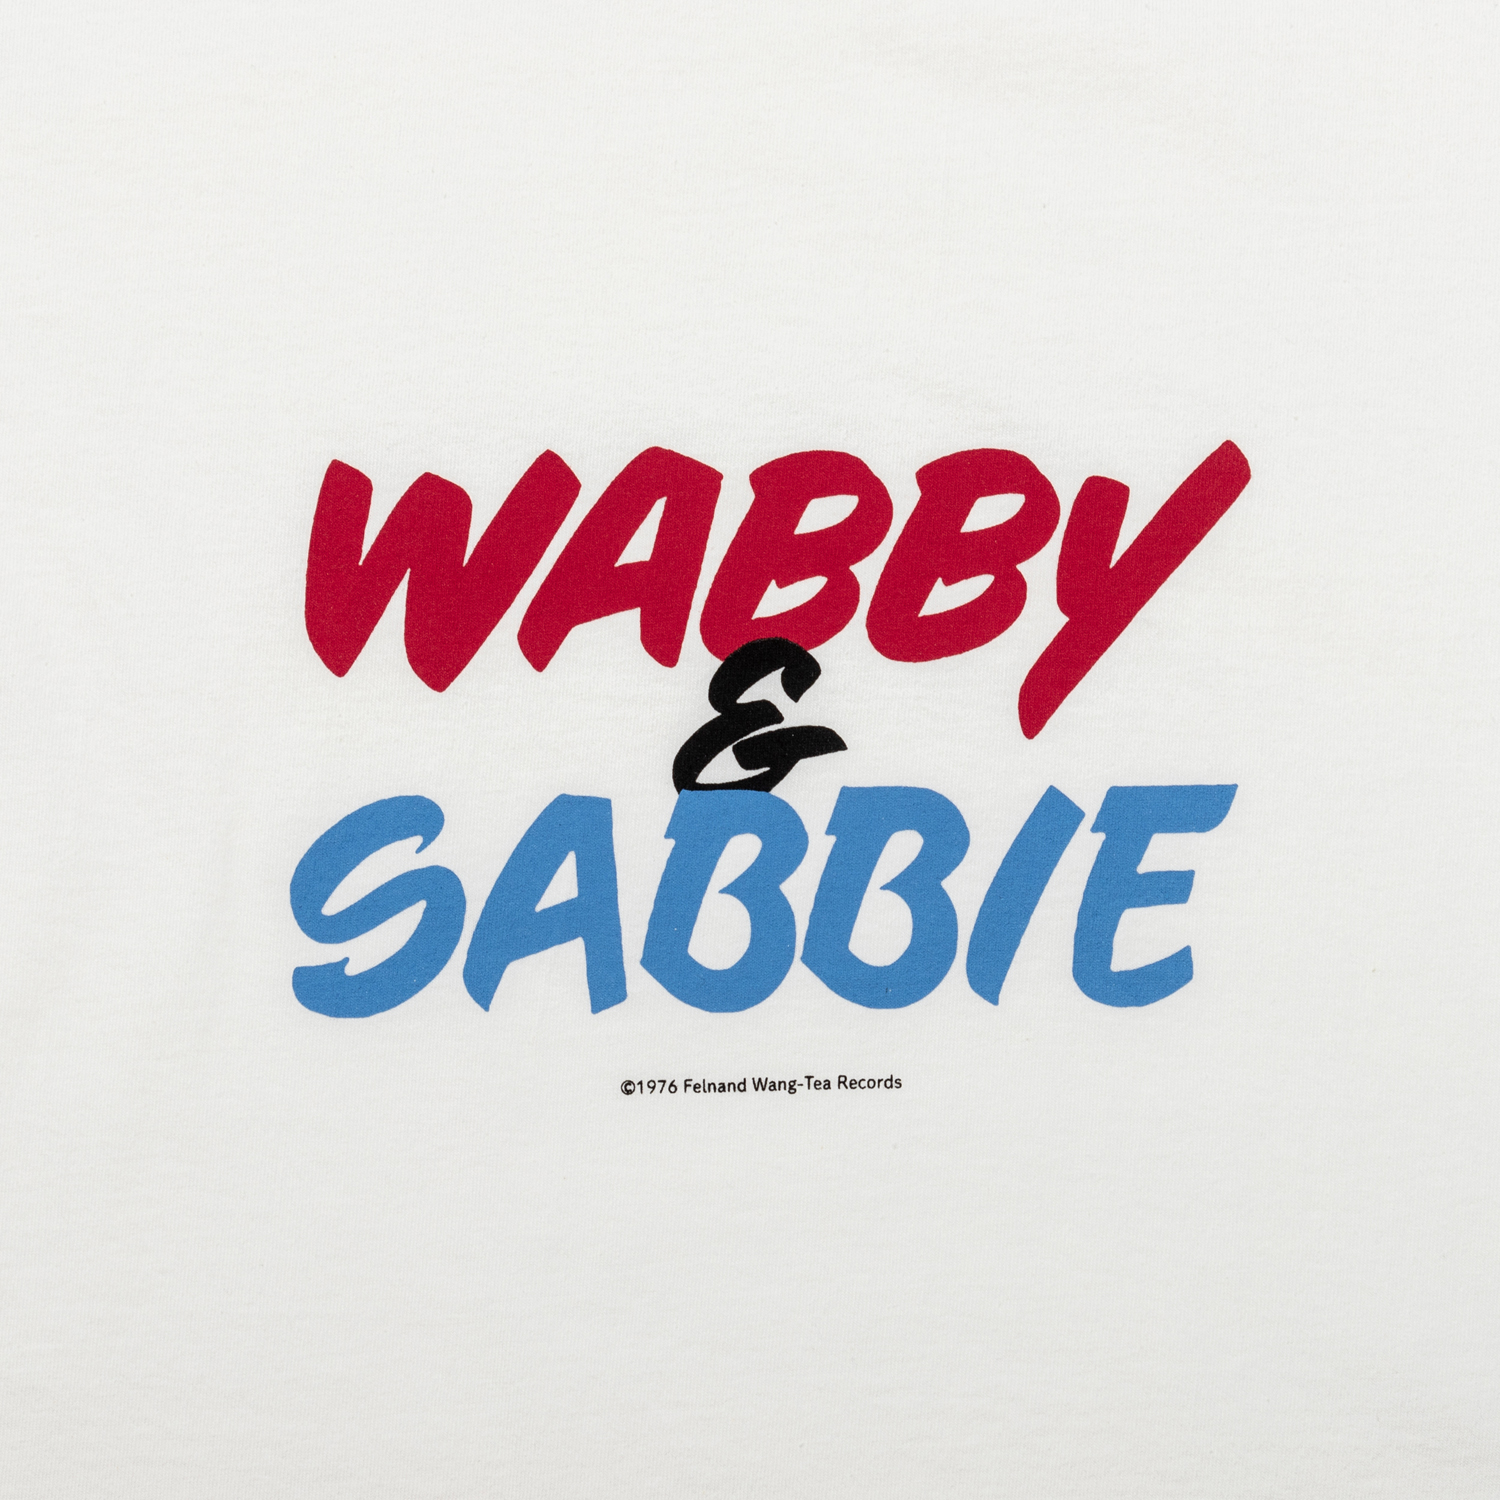 WABBY&SABBIE ‘23 designed by Jerry UKAI